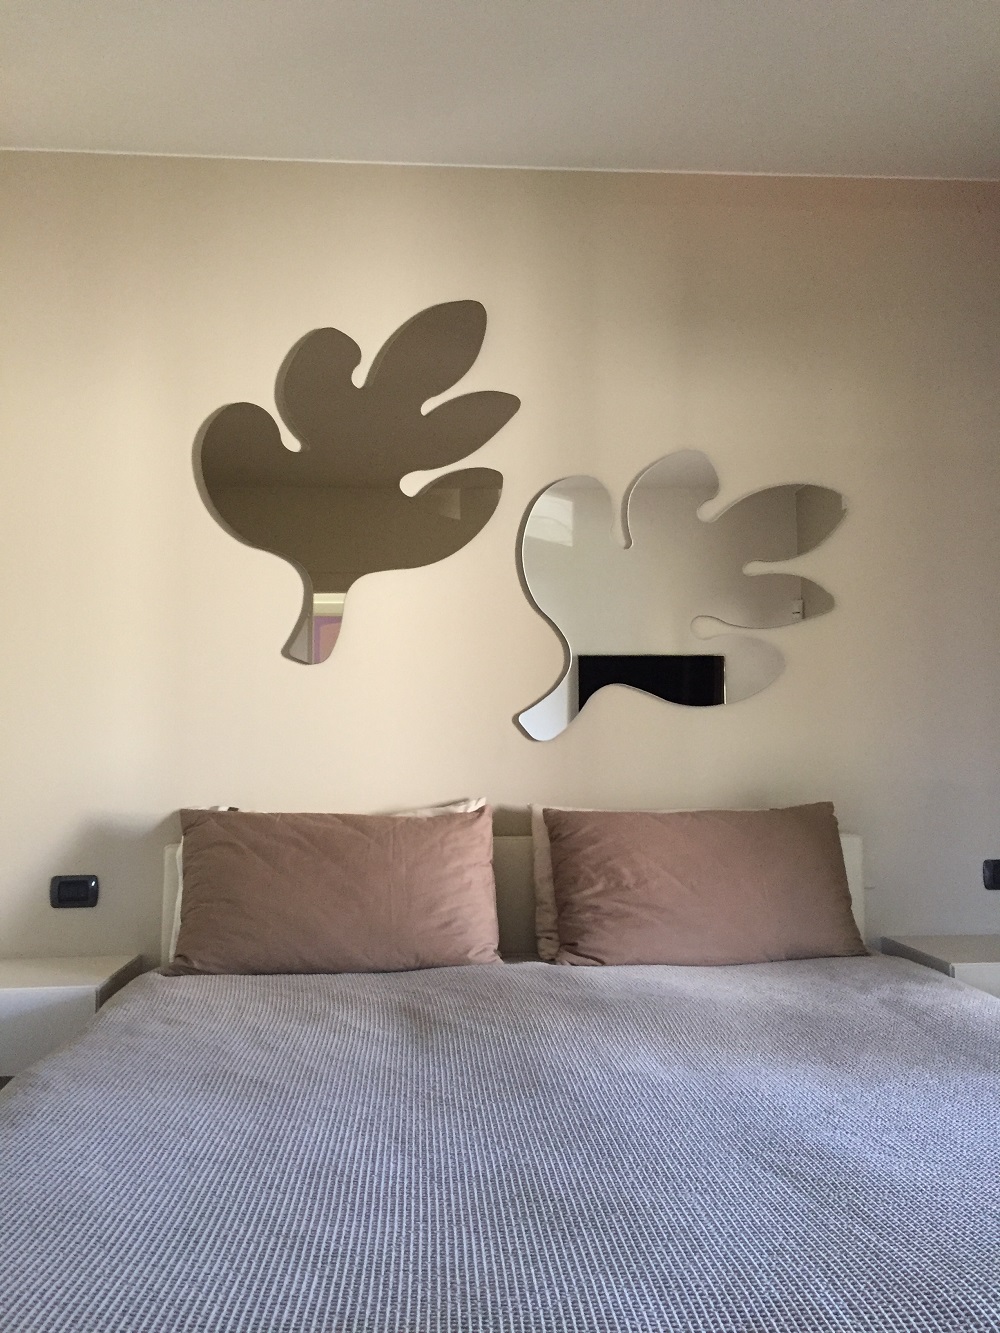 Specchi forma personalizzata su camera da letto